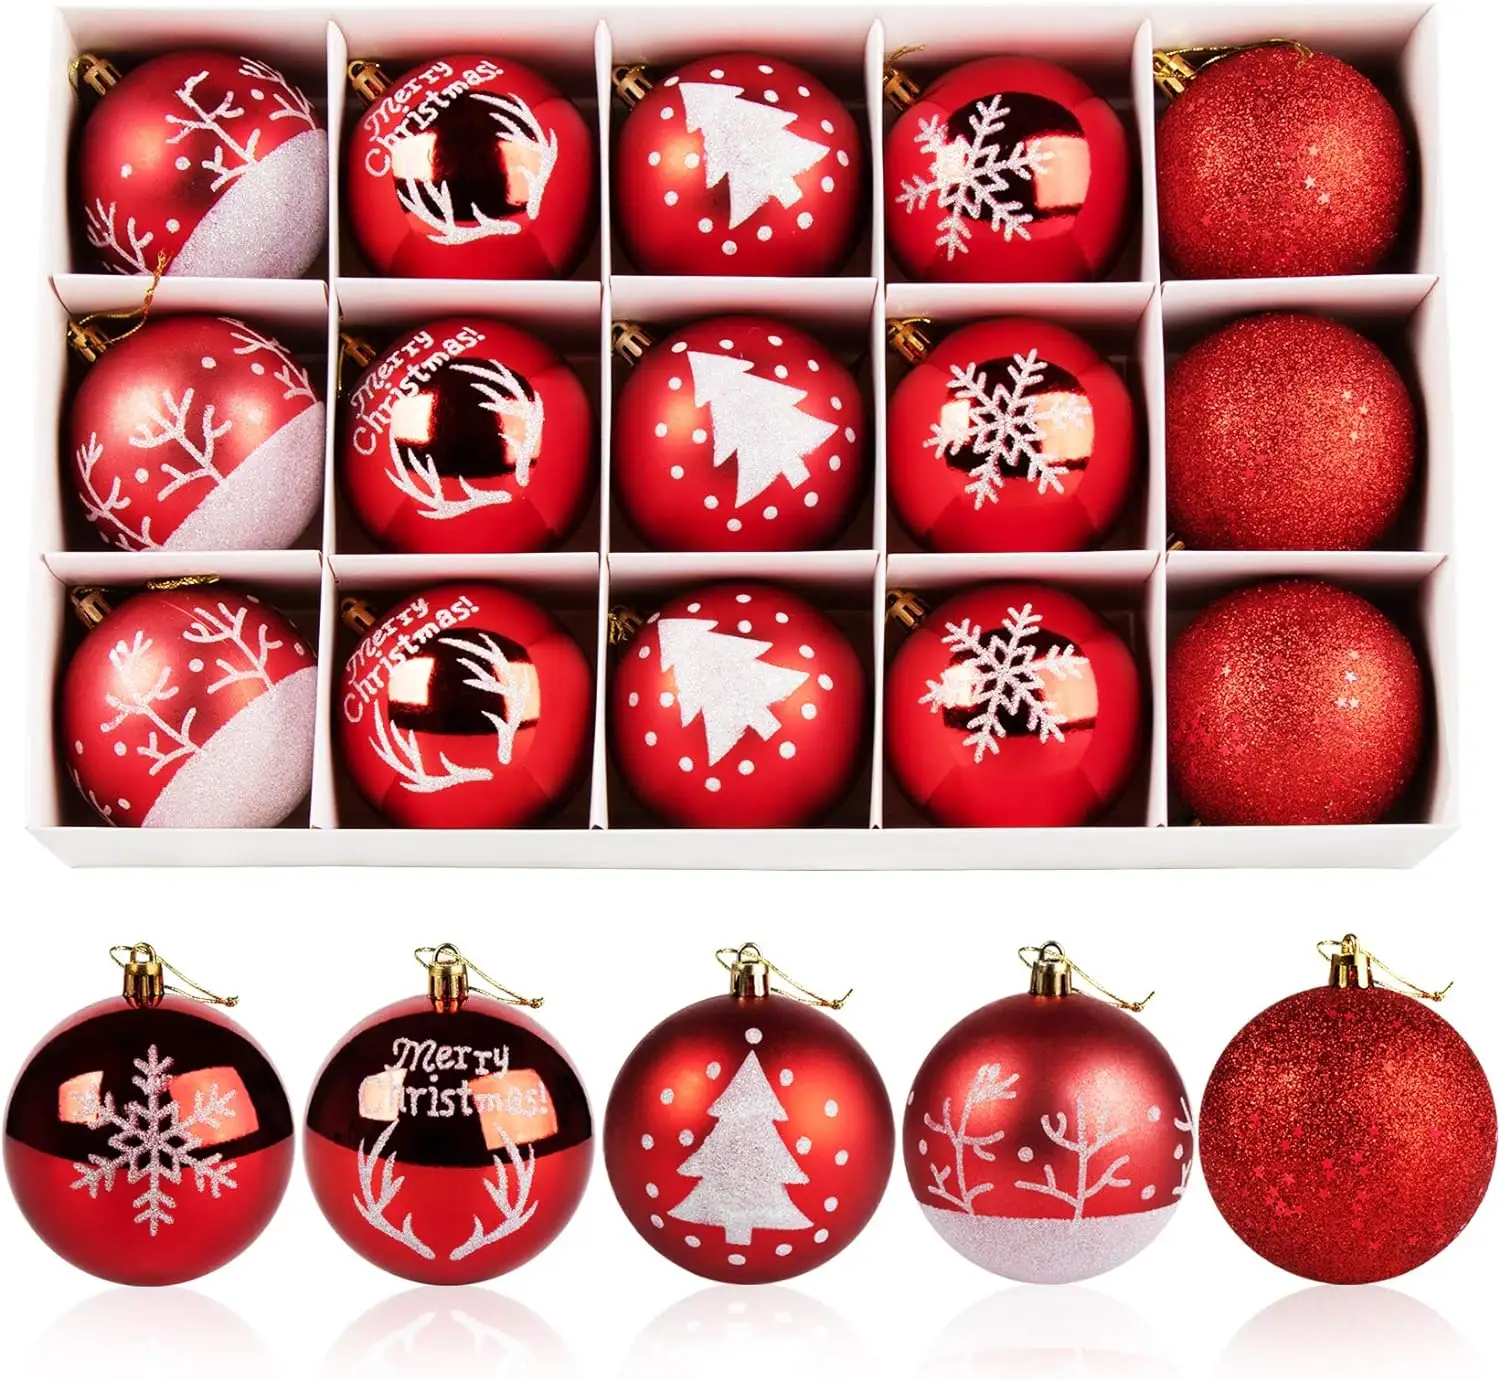 Yiwu Merry Tree Bola de Natal de plástico pintada em vermelho e branco de 8 cm com desenhos pintados à mão para decoração de árvores